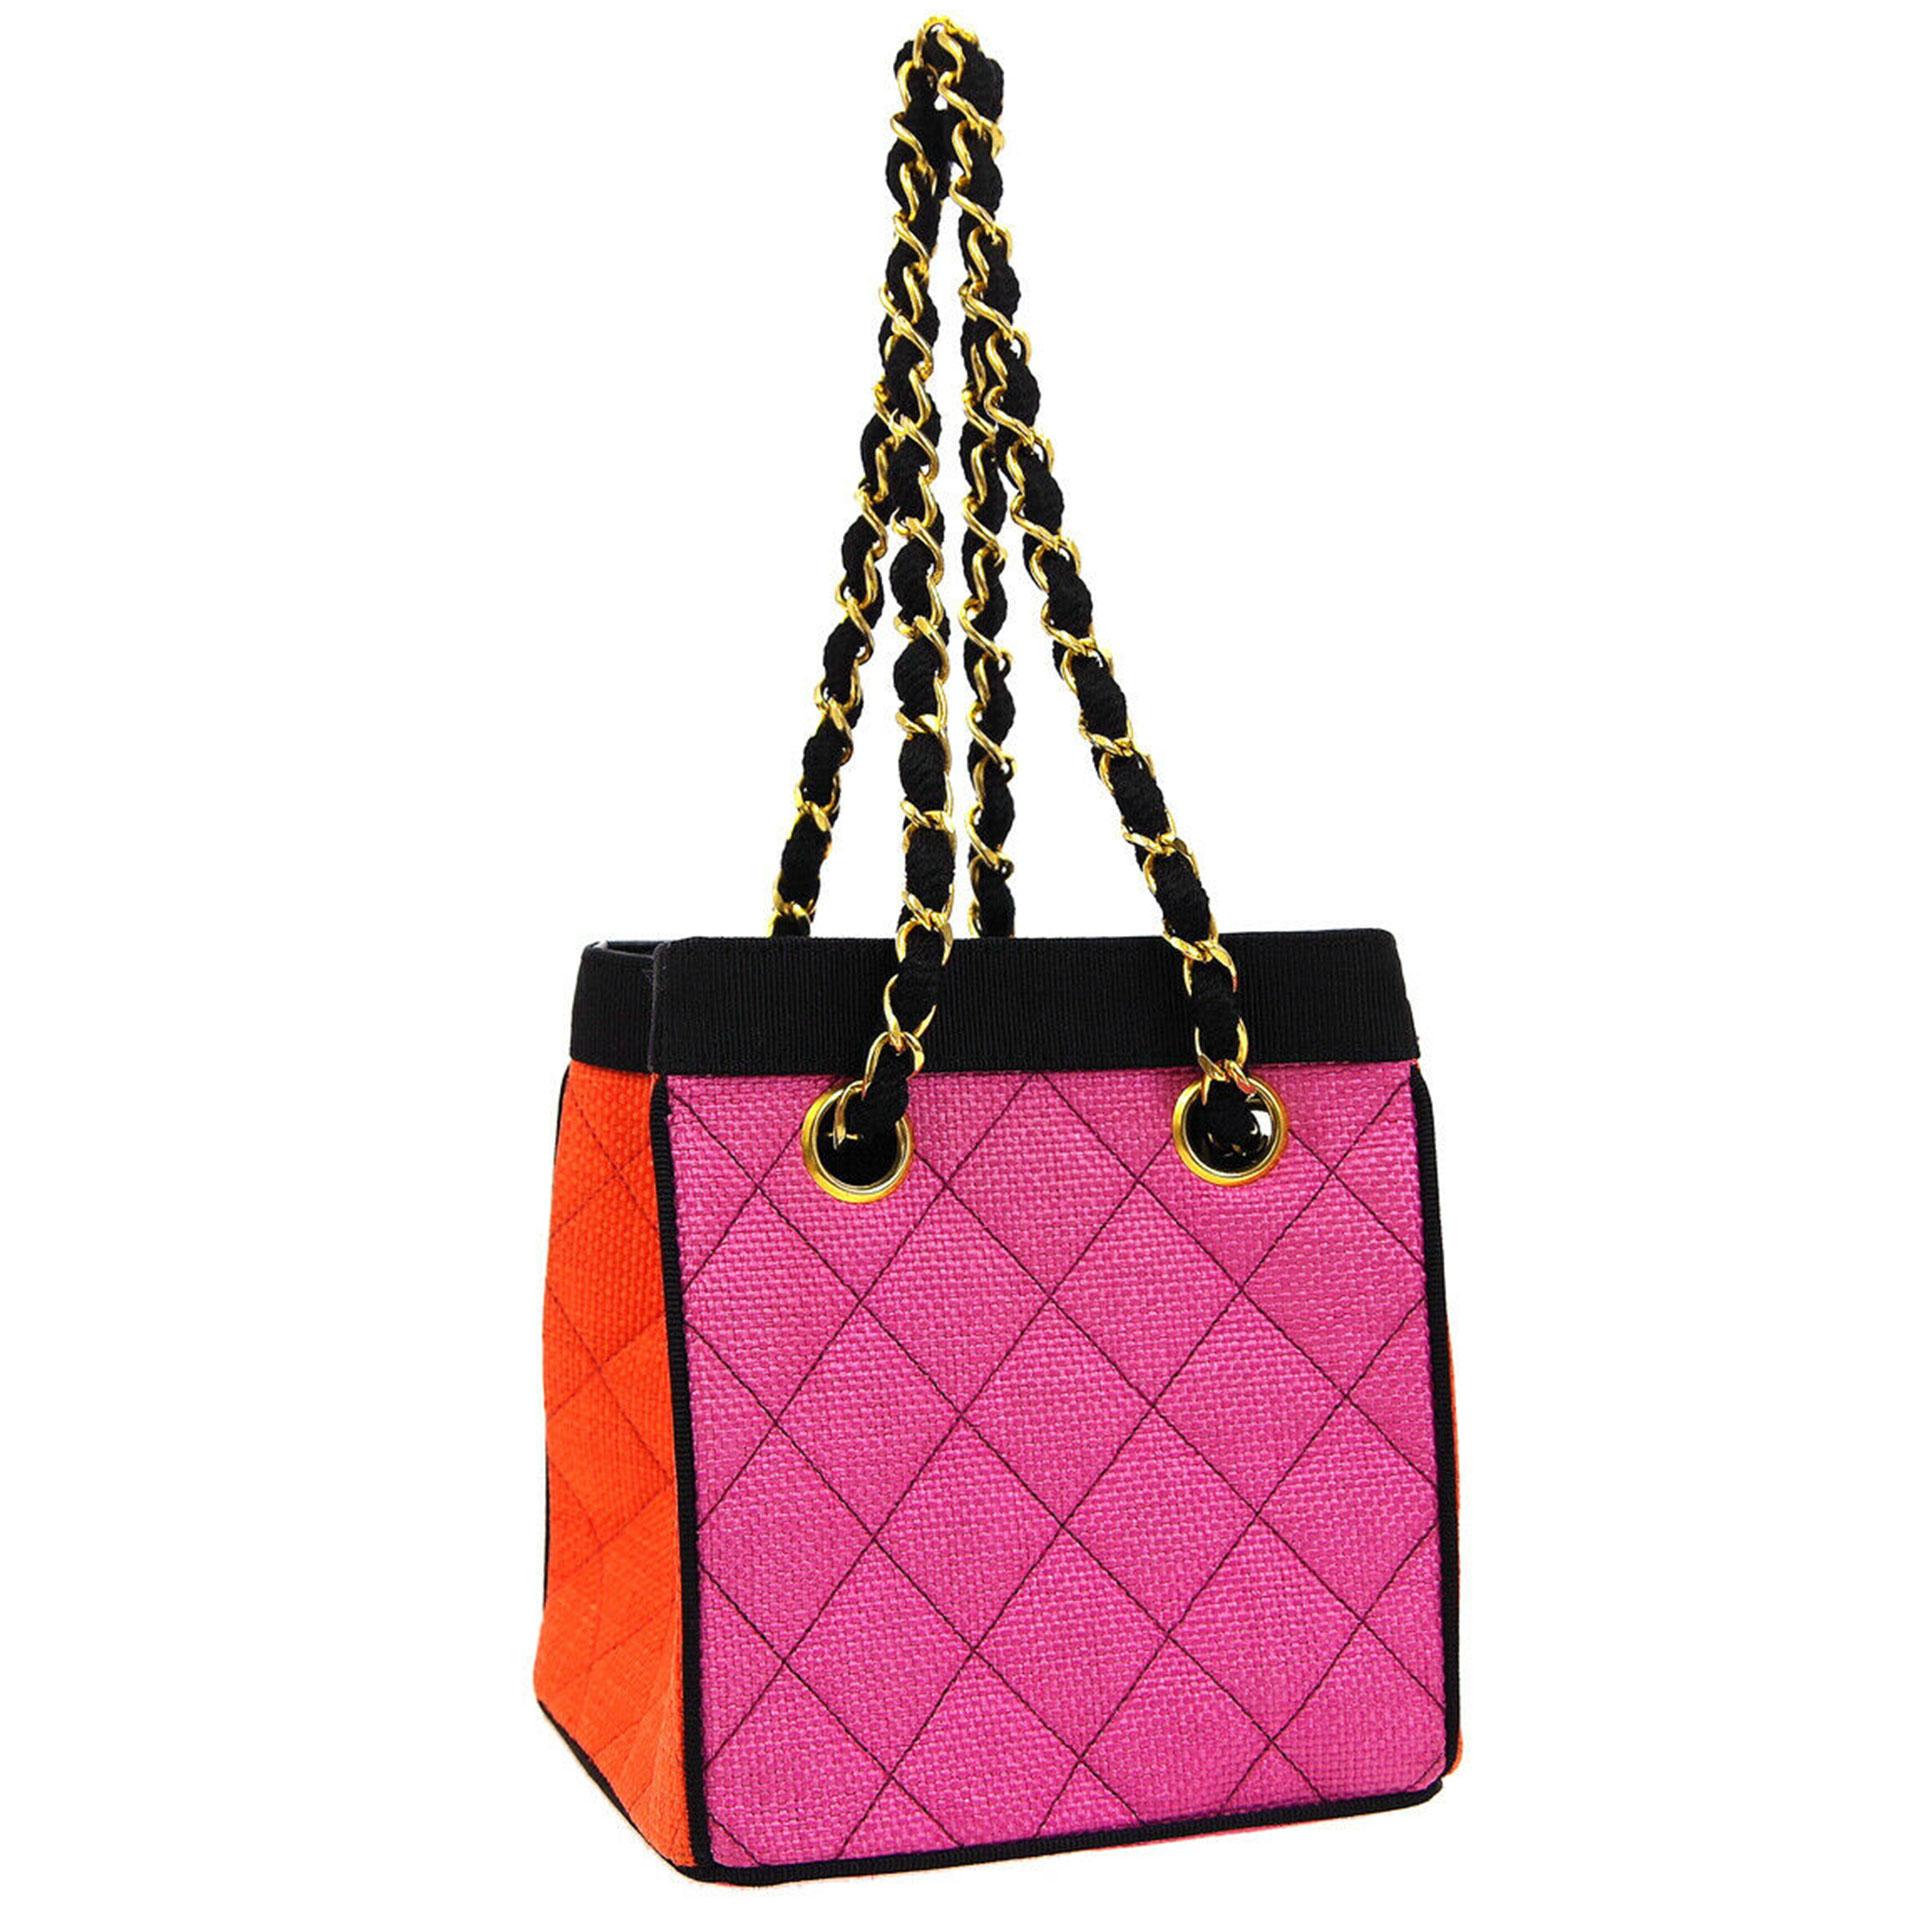 Chanel 1991 Multicolor Mini Vintage Tote Bag Rare Pink Orange Black Straw Tote In Good Condition For Sale In Miami, FL